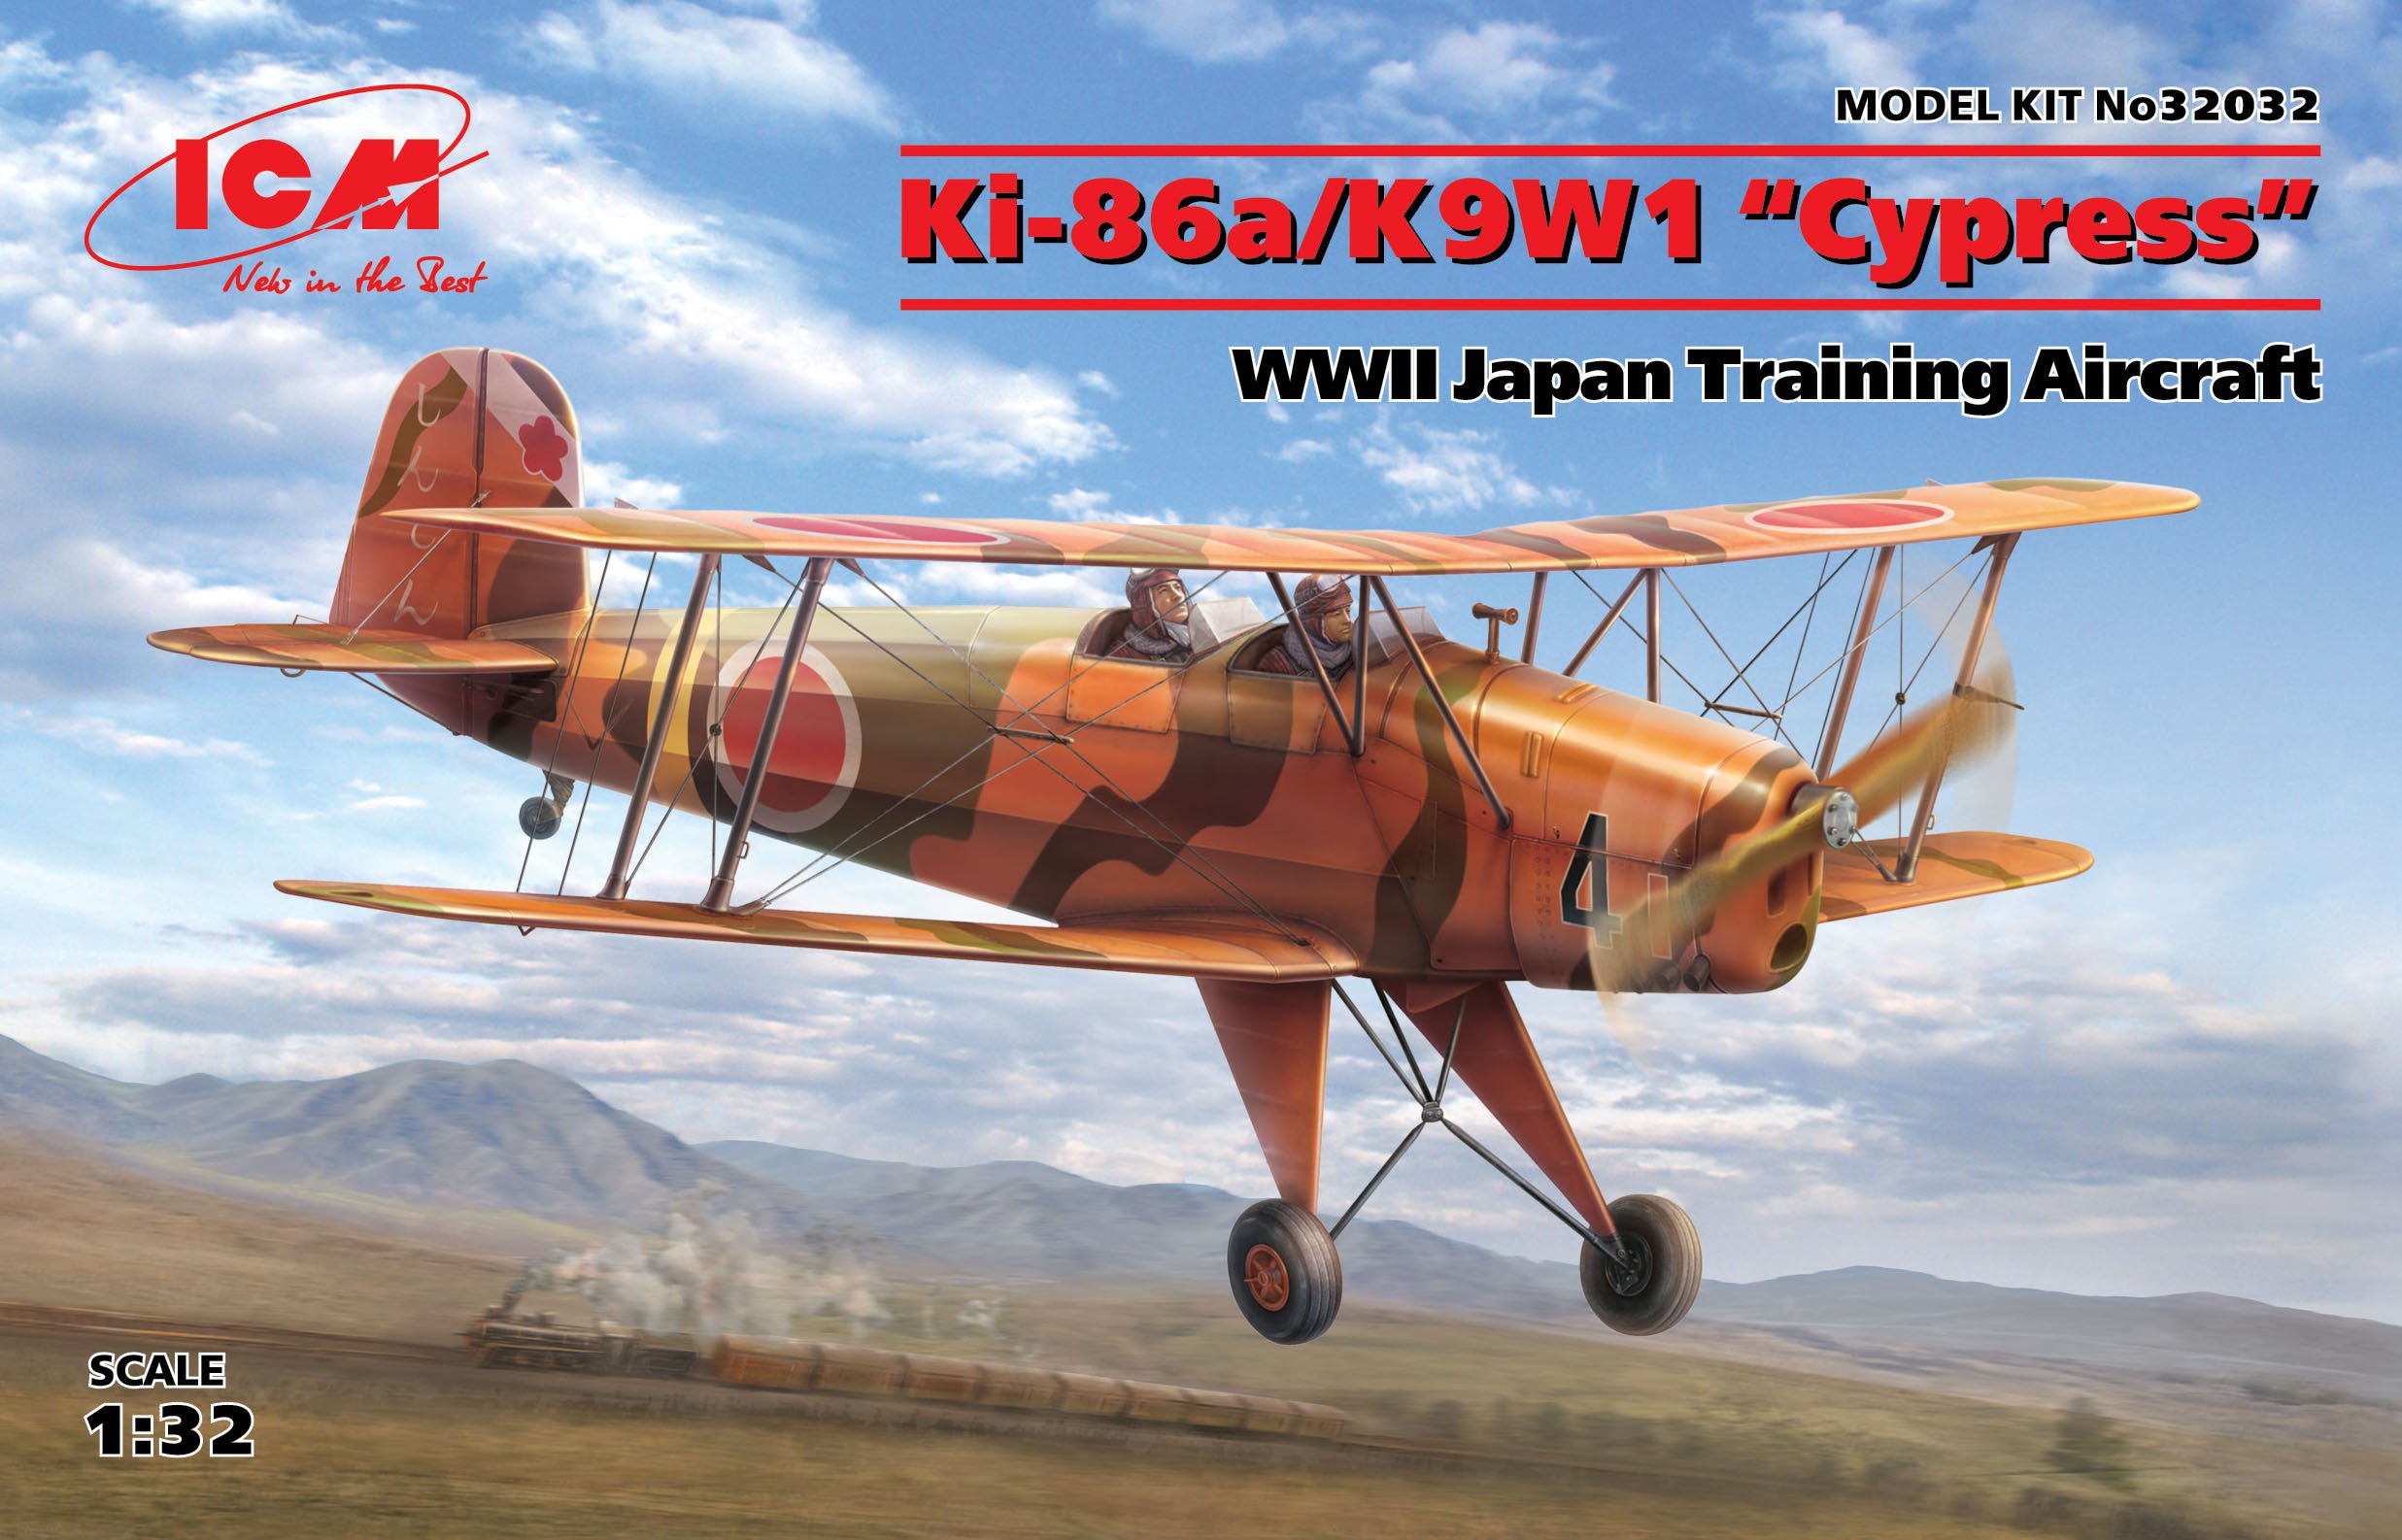 1/32　キ-86　四式基本練習機/二式陸上基本練習機「紅葉」 - ウインドウを閉じる